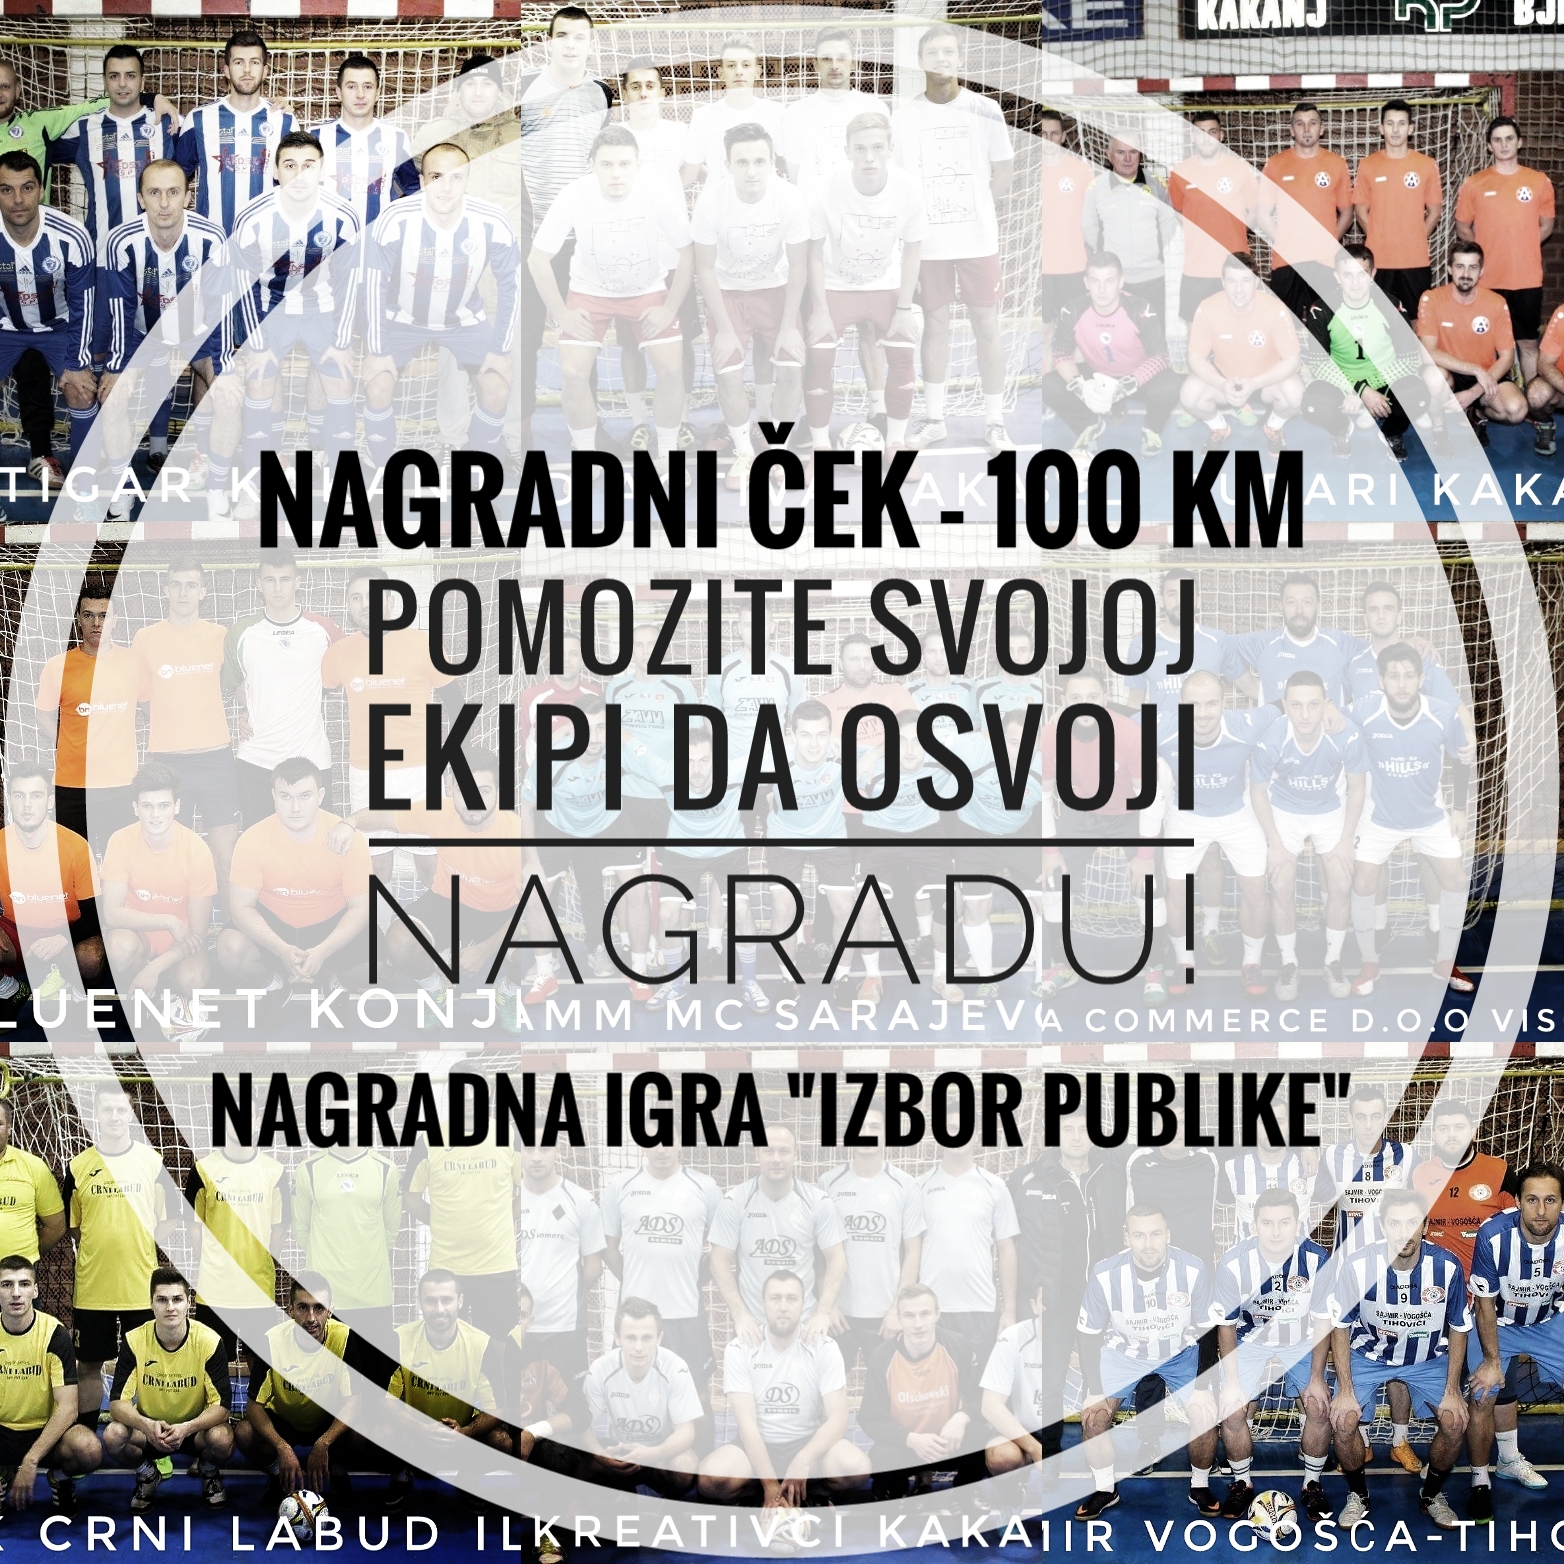 NAGRADNA IGRA “Izbor publike”: Ekipa koja dobije najviše lajkova osvaja nagradni ček u iznosu od 100 KM!